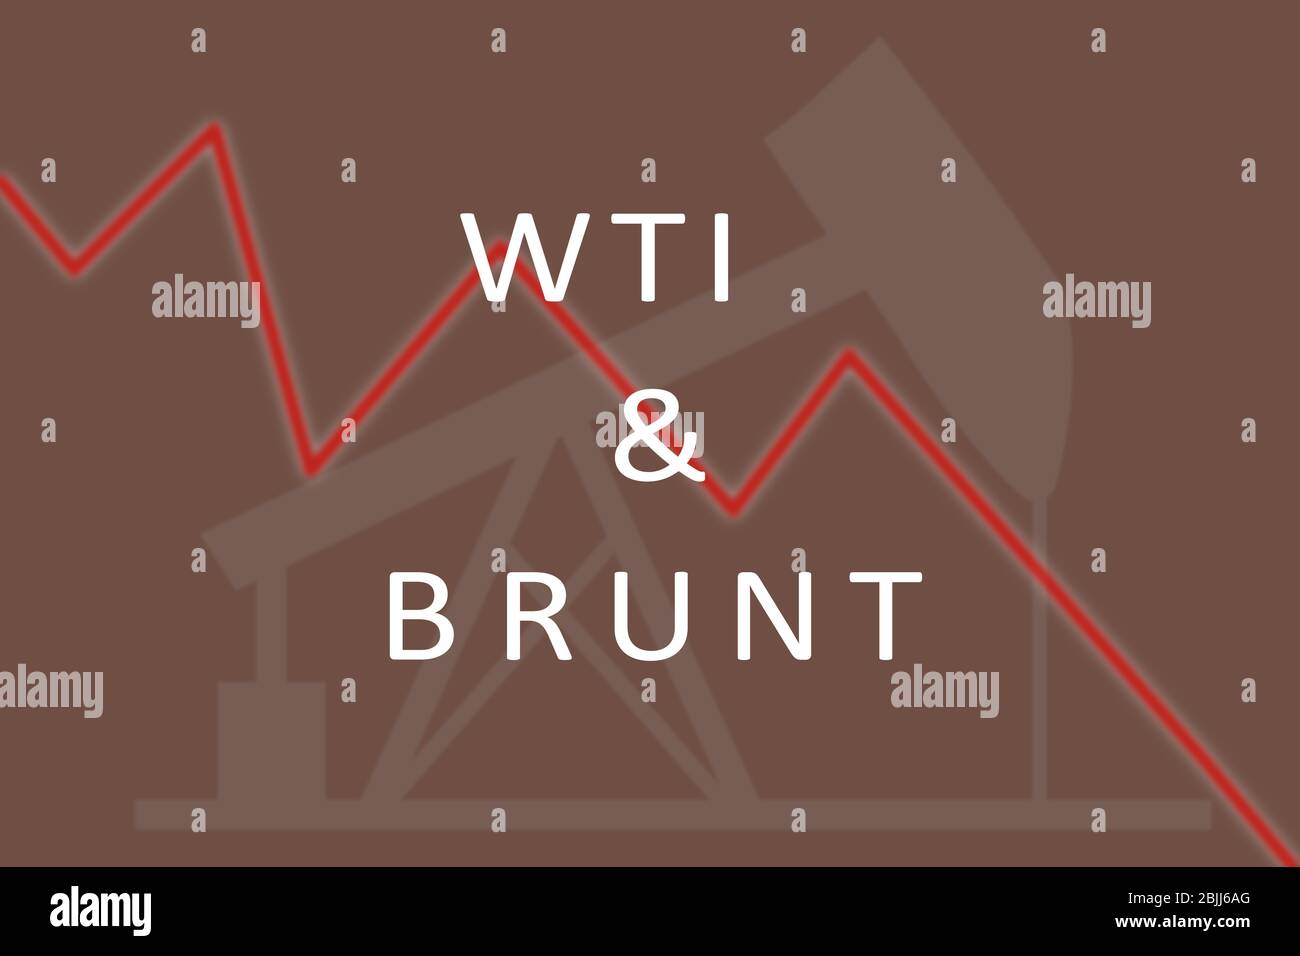 Concept de l'illustration graphique de la baisse ou de la chute du prix du pétrole brut de WTI et Brunt. Banque D'Images